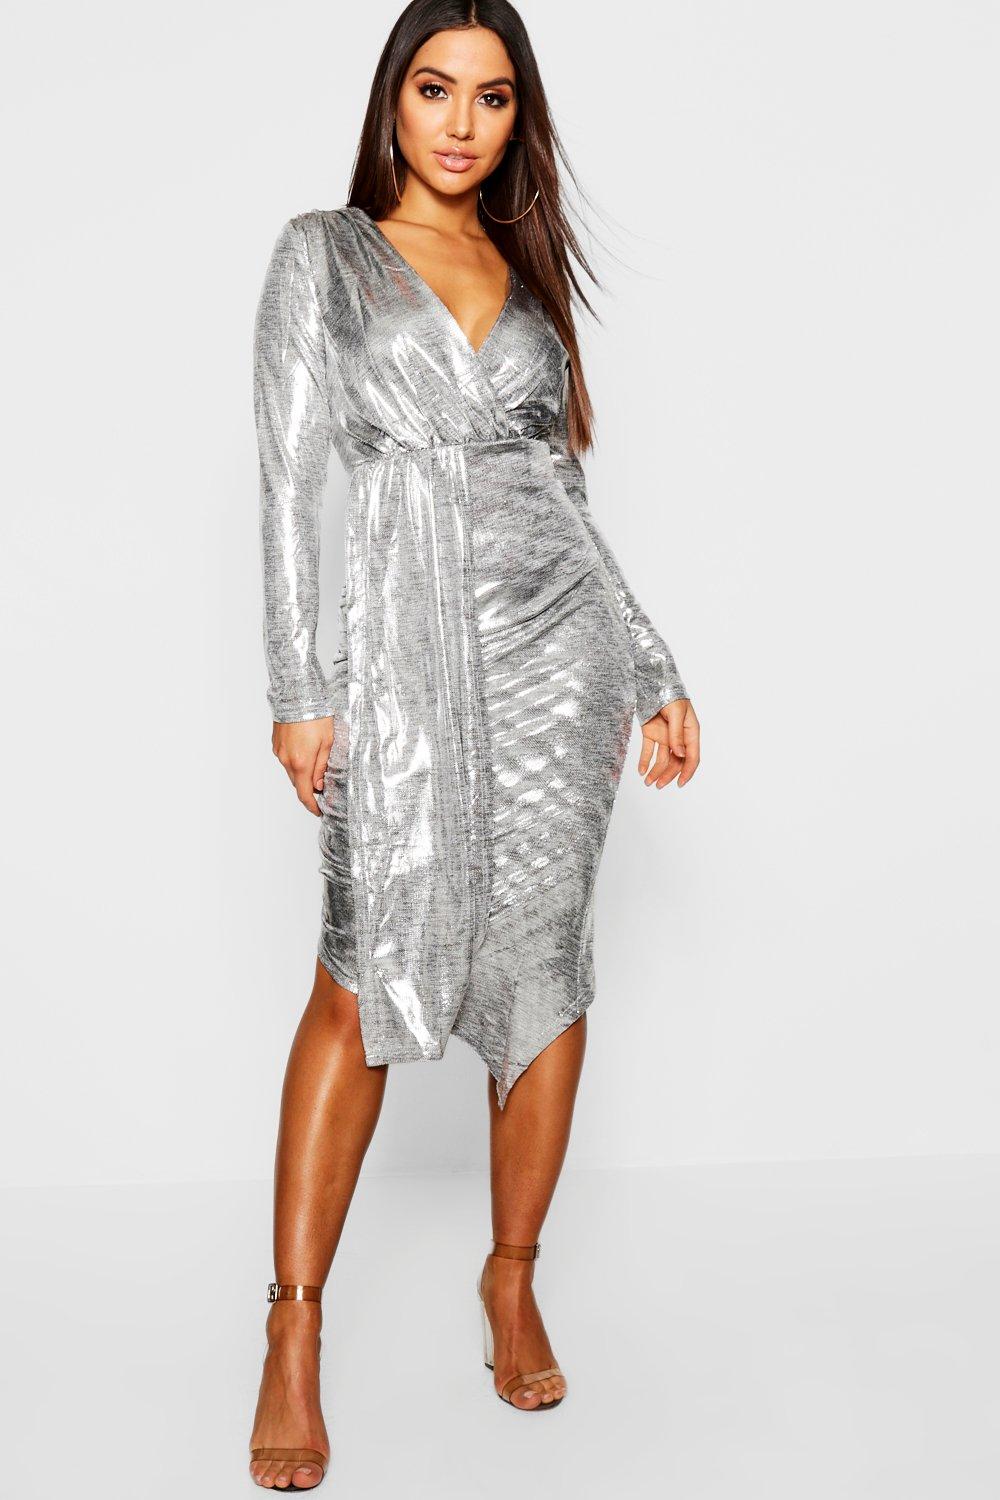 silver metallic wrap dress